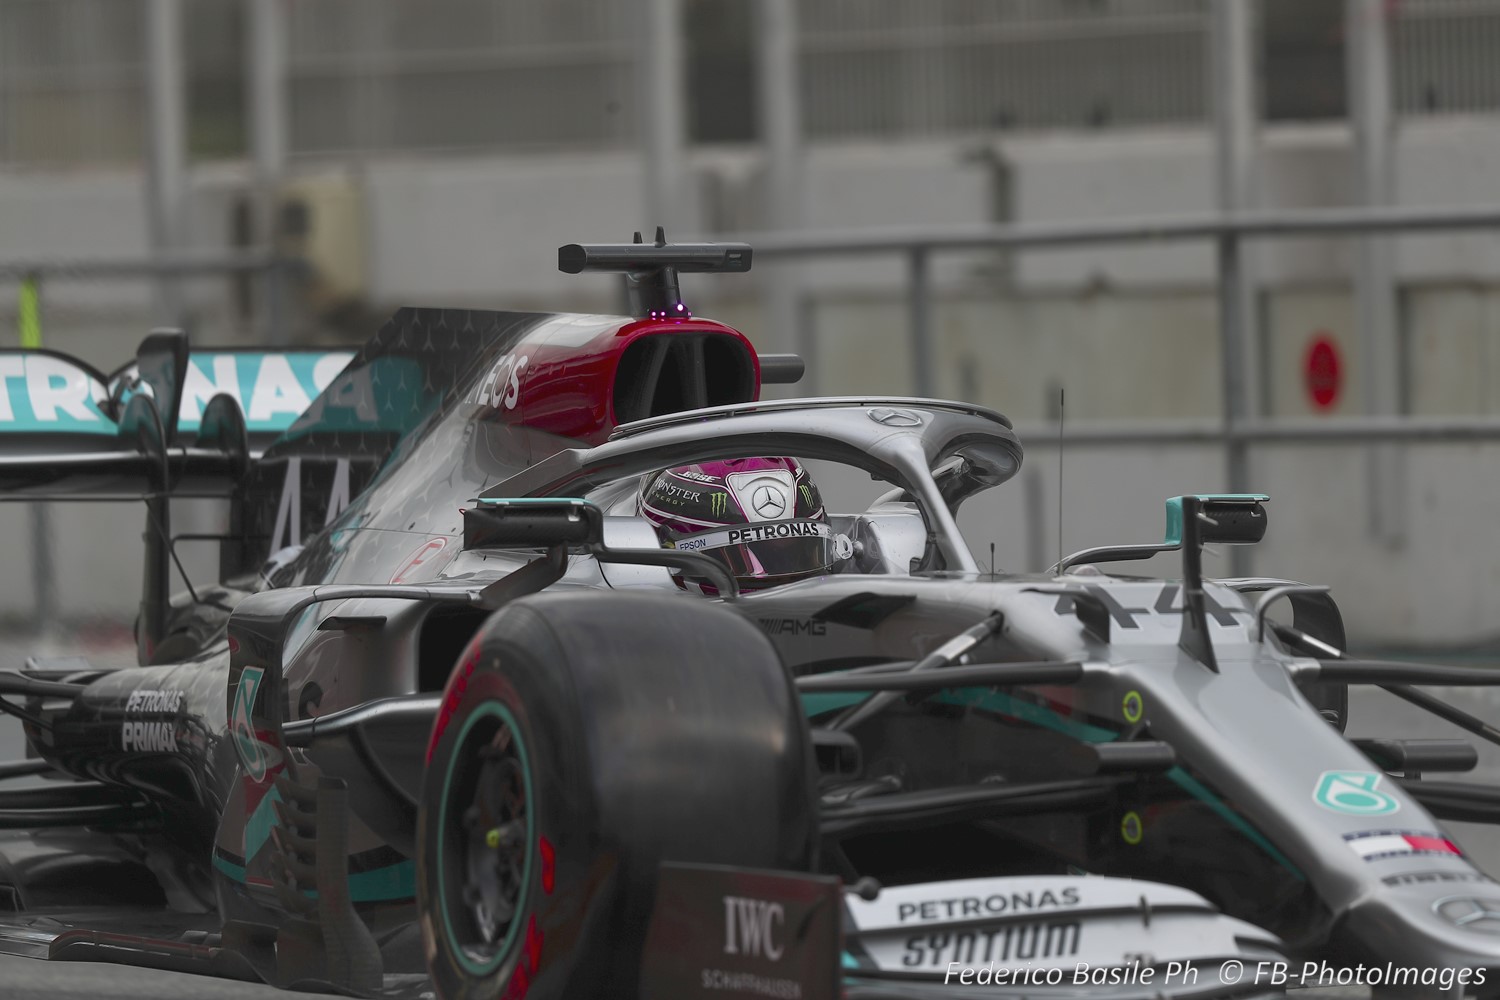 Lewis Hamilton in the superior Mercedes